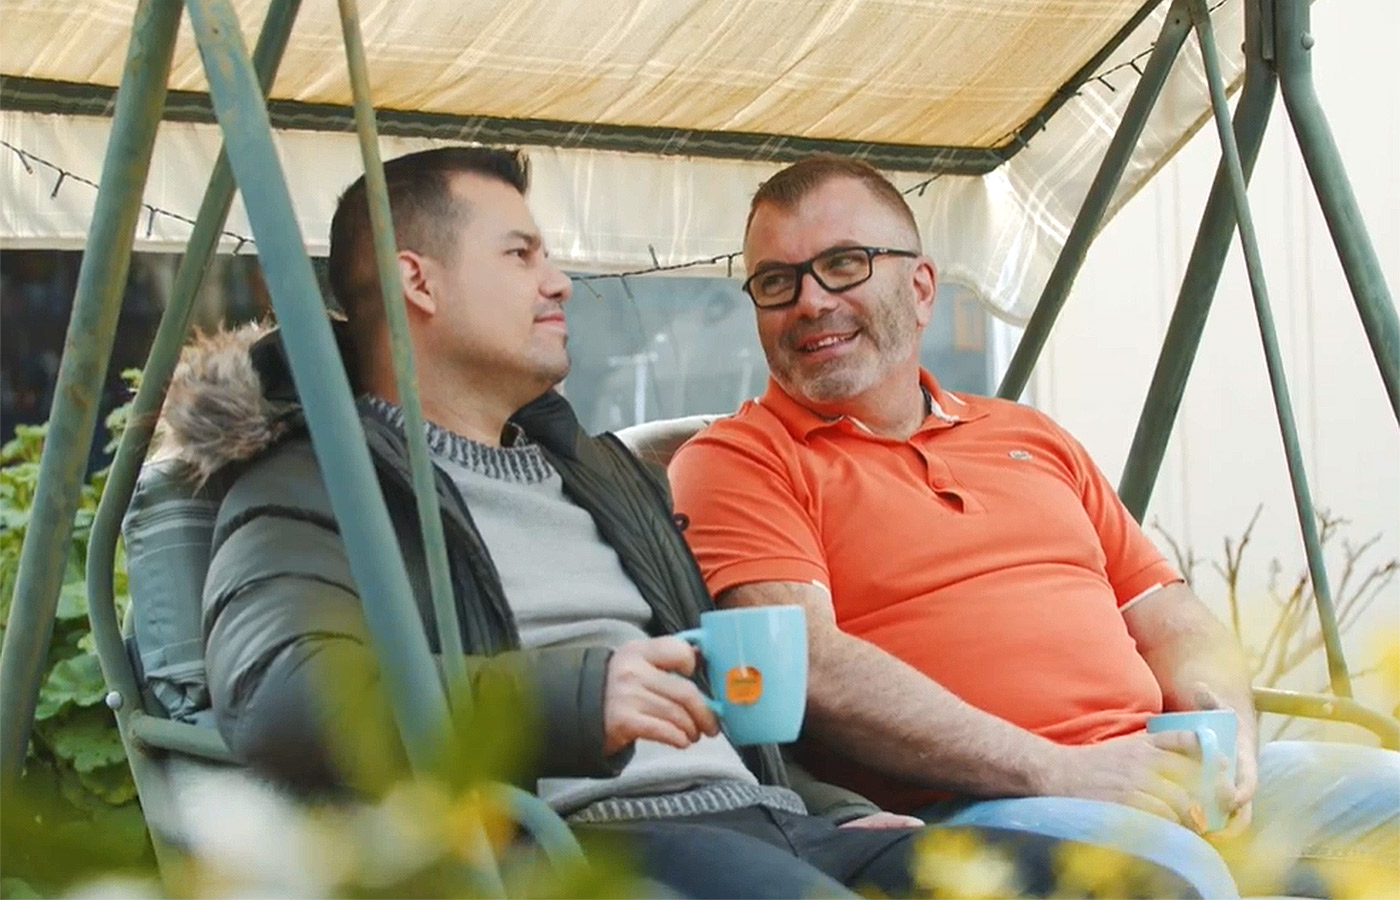 Osia kullanıcısı Adrian ve arkadaşı verandadaki salıncakta oturarak sohbet etmektedirler